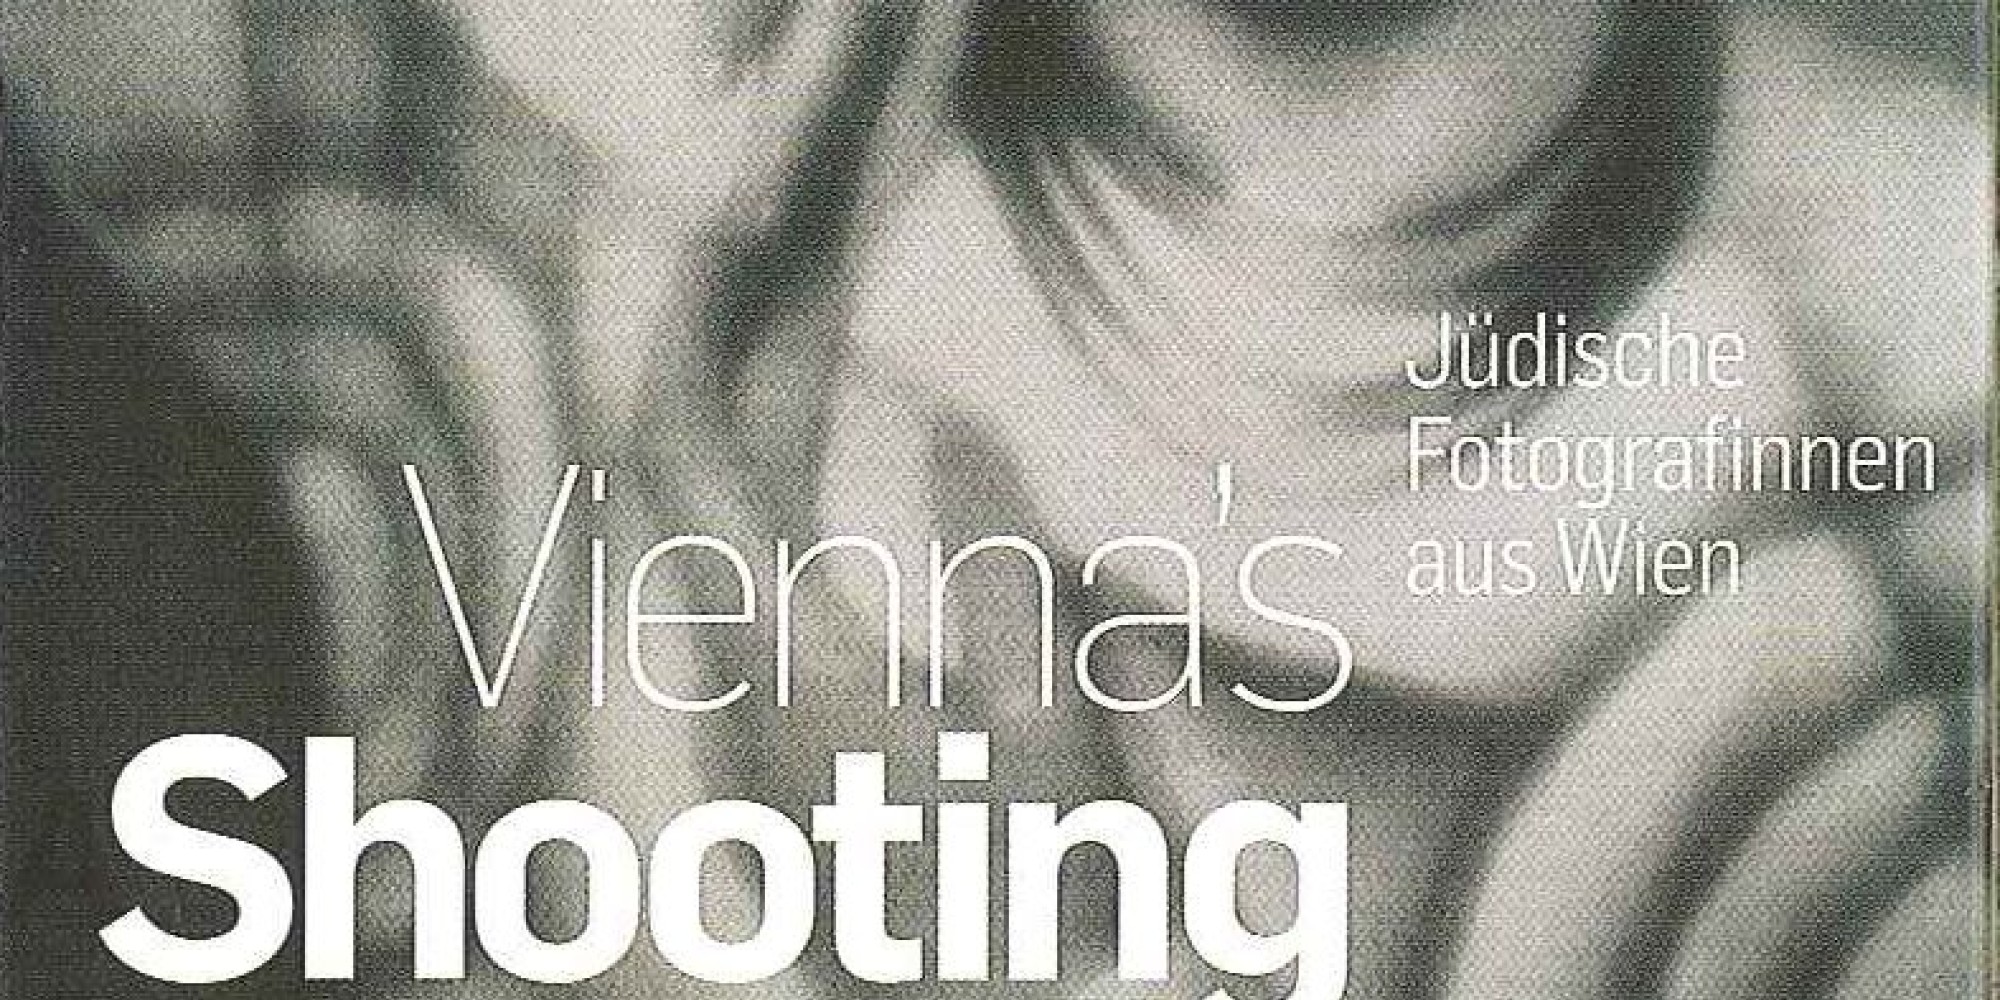  Vienna's Shooting Girls. Jüdische Fotografinnen aus Wien